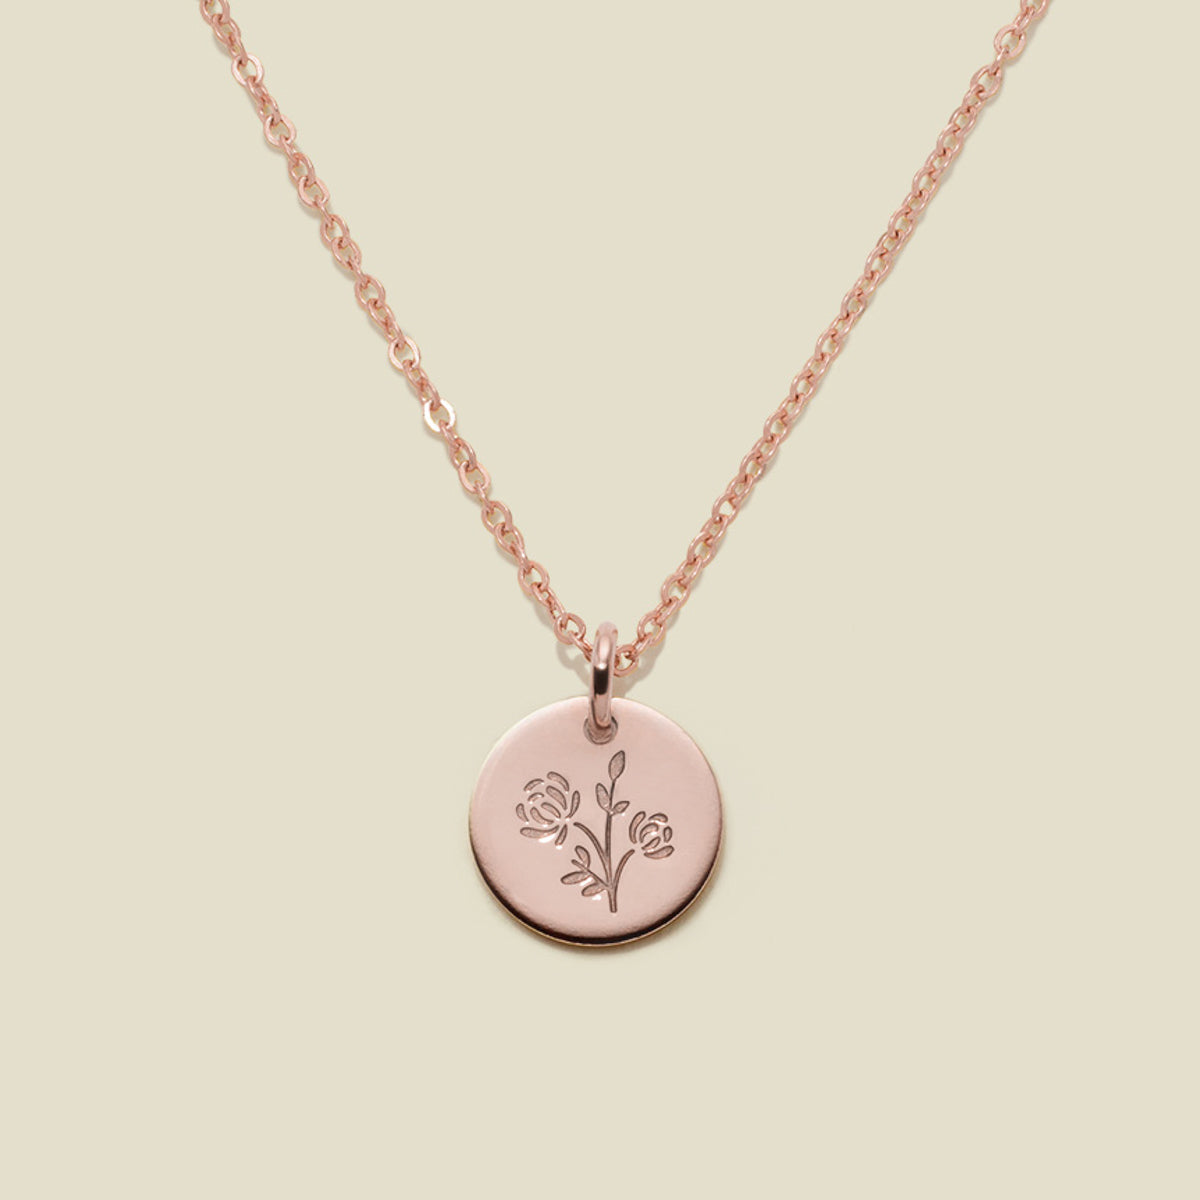 November Birth Flower Necklace Rose Gold Filled / 3/8" / 16"-18" Necklace